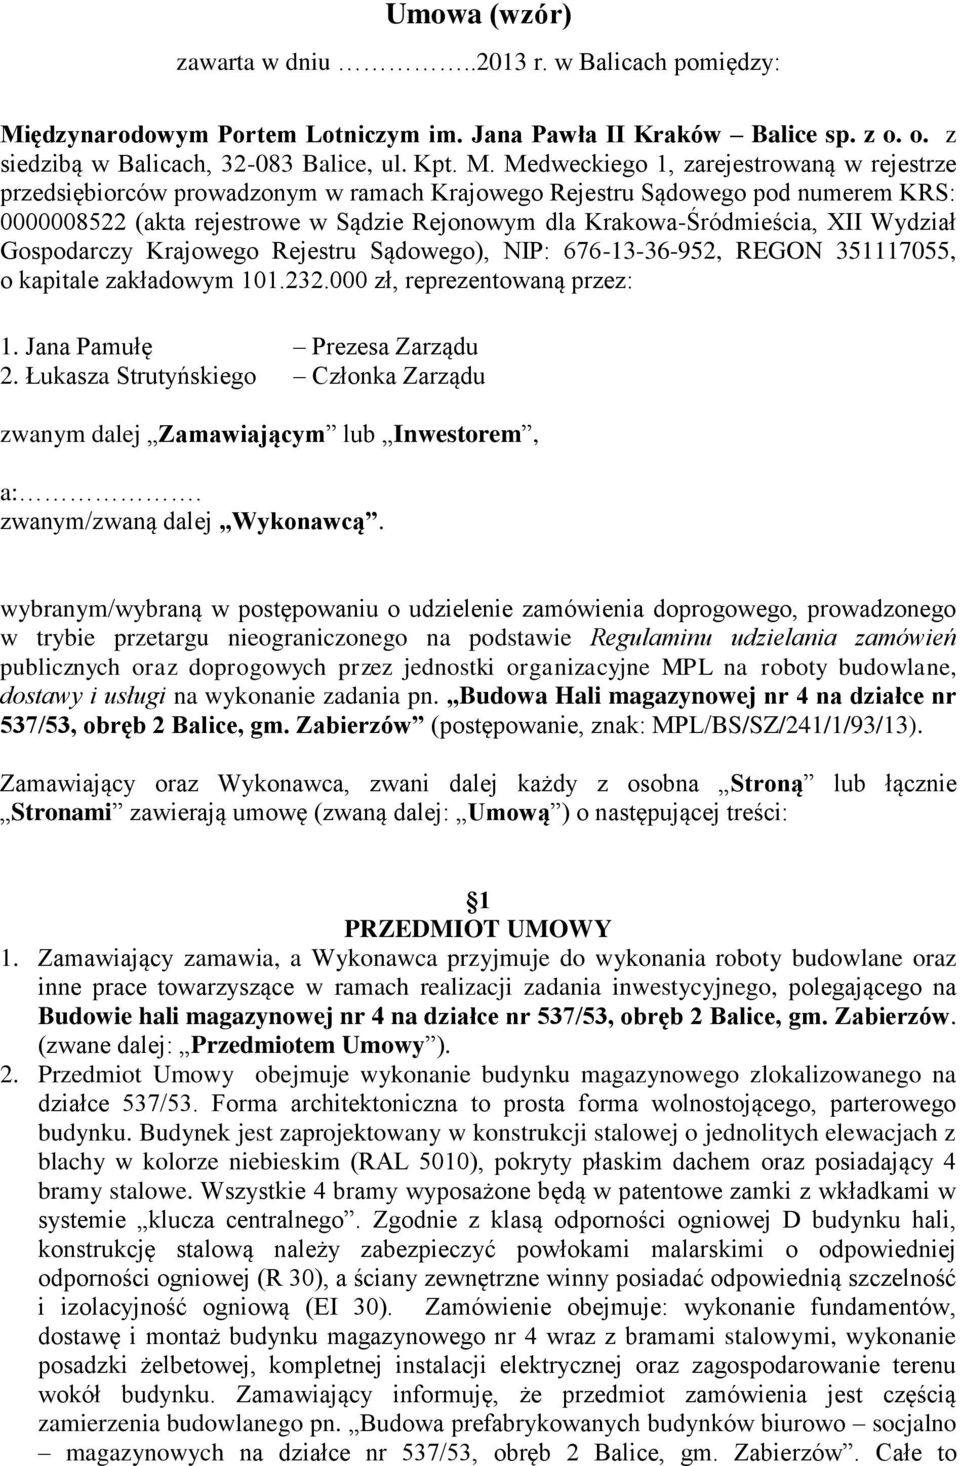 Medweckiego 1, zarejestrowaną w rejestrze przedsiębiorców prowadzonym w ramach Krajowego Rejestru Sądowego pod numerem KRS: 0000008522 (akta rejestrowe w Sądzie Rejonowym dla Krakowa-Śródmieścia, XII